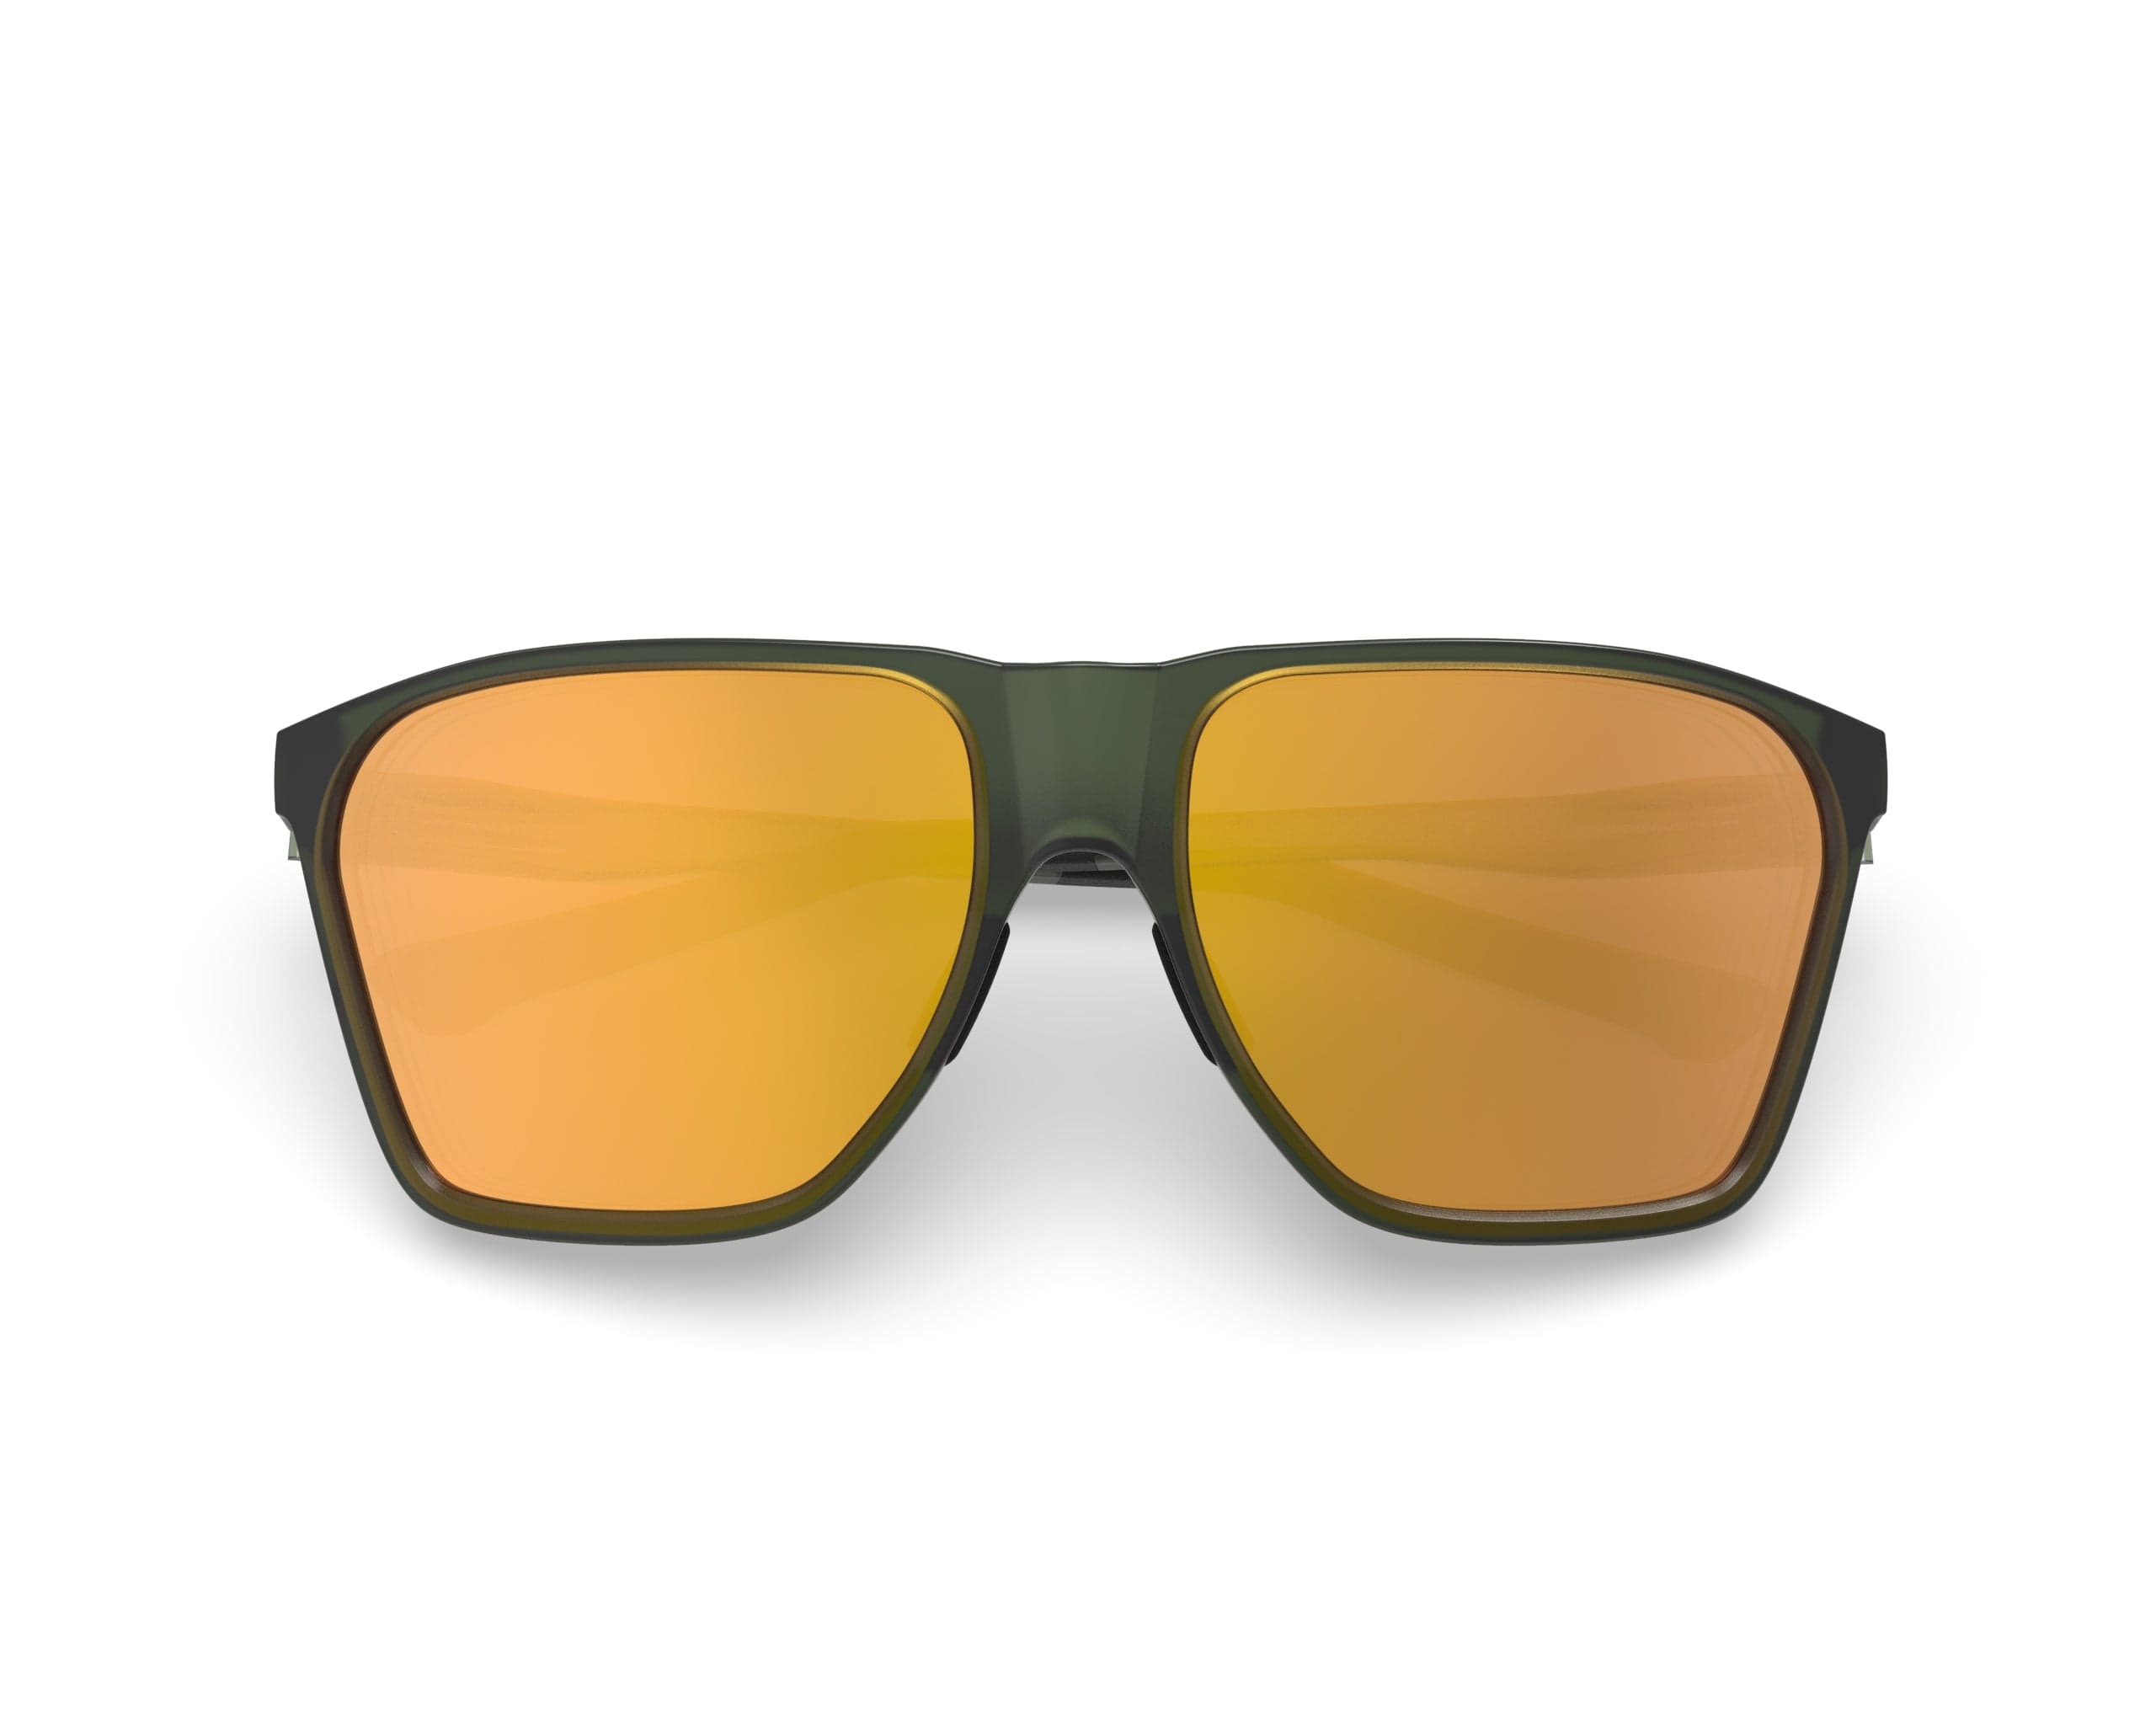 Spektrum Sunglasses Moss Green Frame / Zeiss Gold Lens ANJAN: Moss Green Frame / Zeiss Gold Lens XMiles